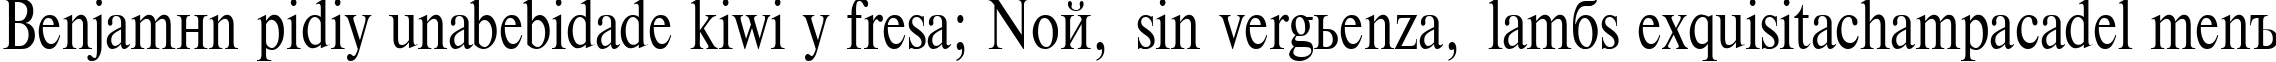 Пример написания шрифтом TimesET 85n текста на испанском